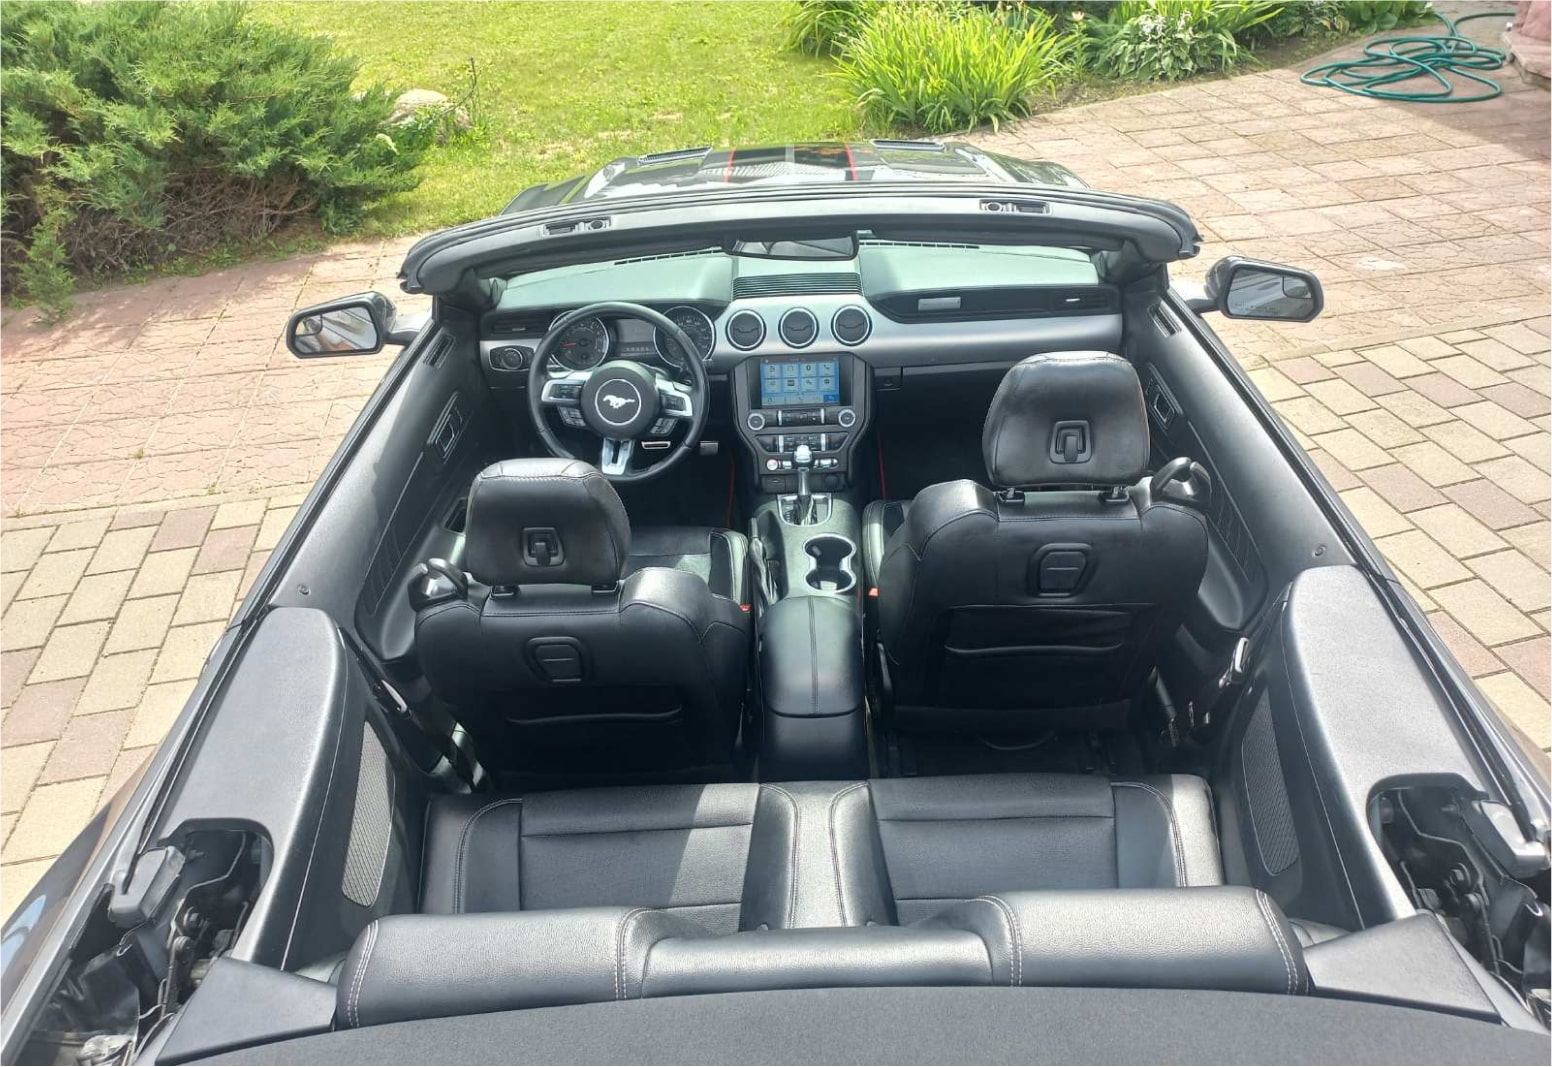 Аренда  Ford Mustang VI Cabrio  5 класса 2019 года в городе Минск от 134 $/сутки,  двигатель: Бензин , объем 2.3 AT EcoBoost литров, КАСКО (Мультидрайв), без водителя, вид 4 - West Group